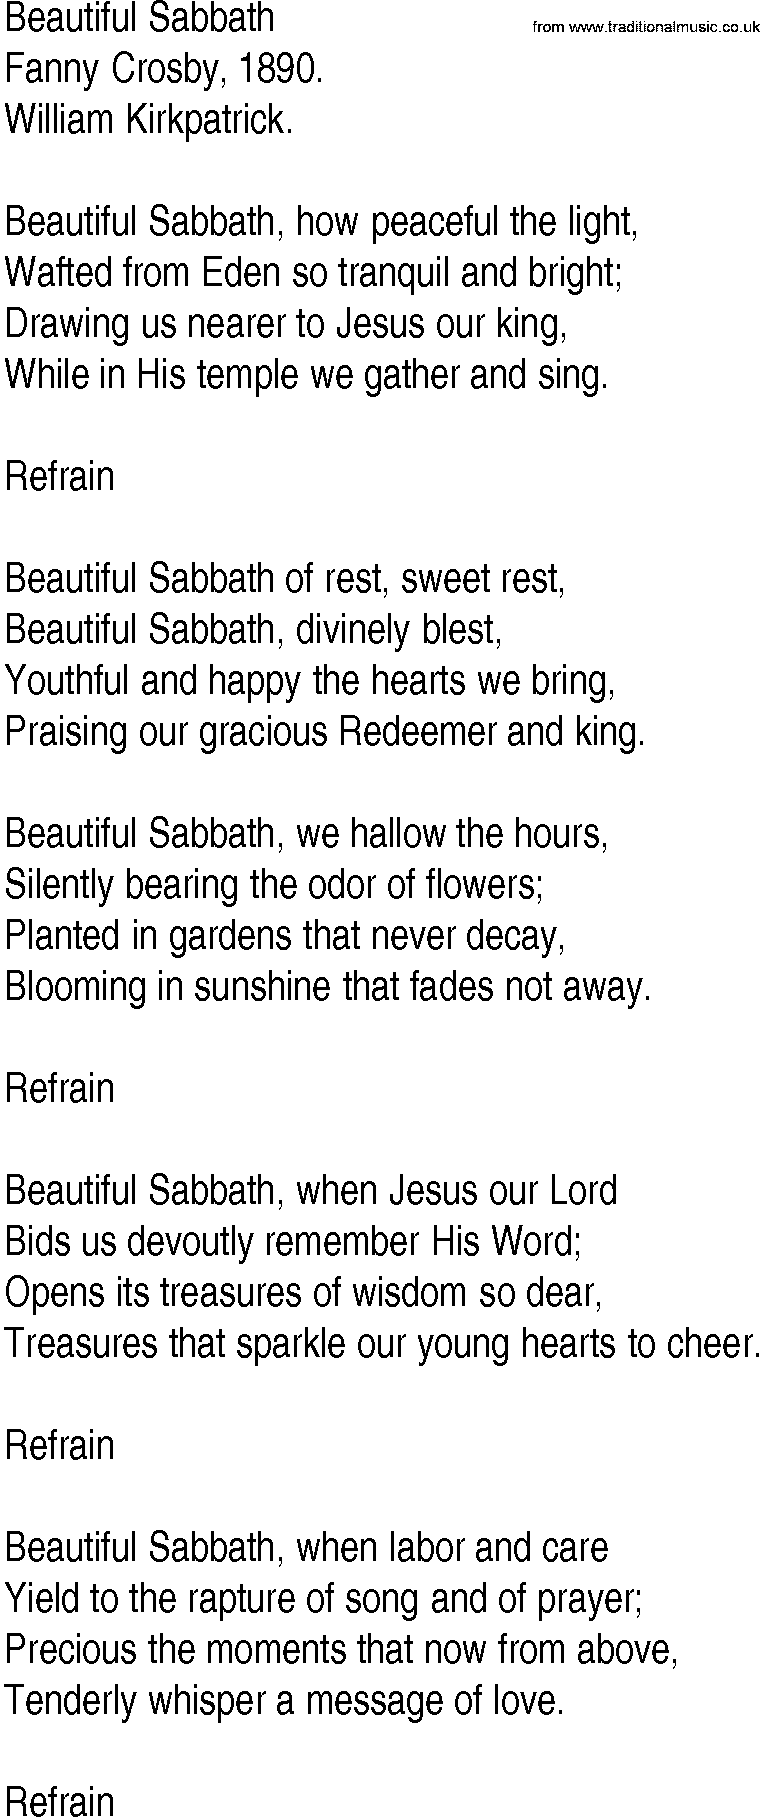 Hymn and Gospel Song: Beautiful Sabbath by Fanny Crosby lyrics